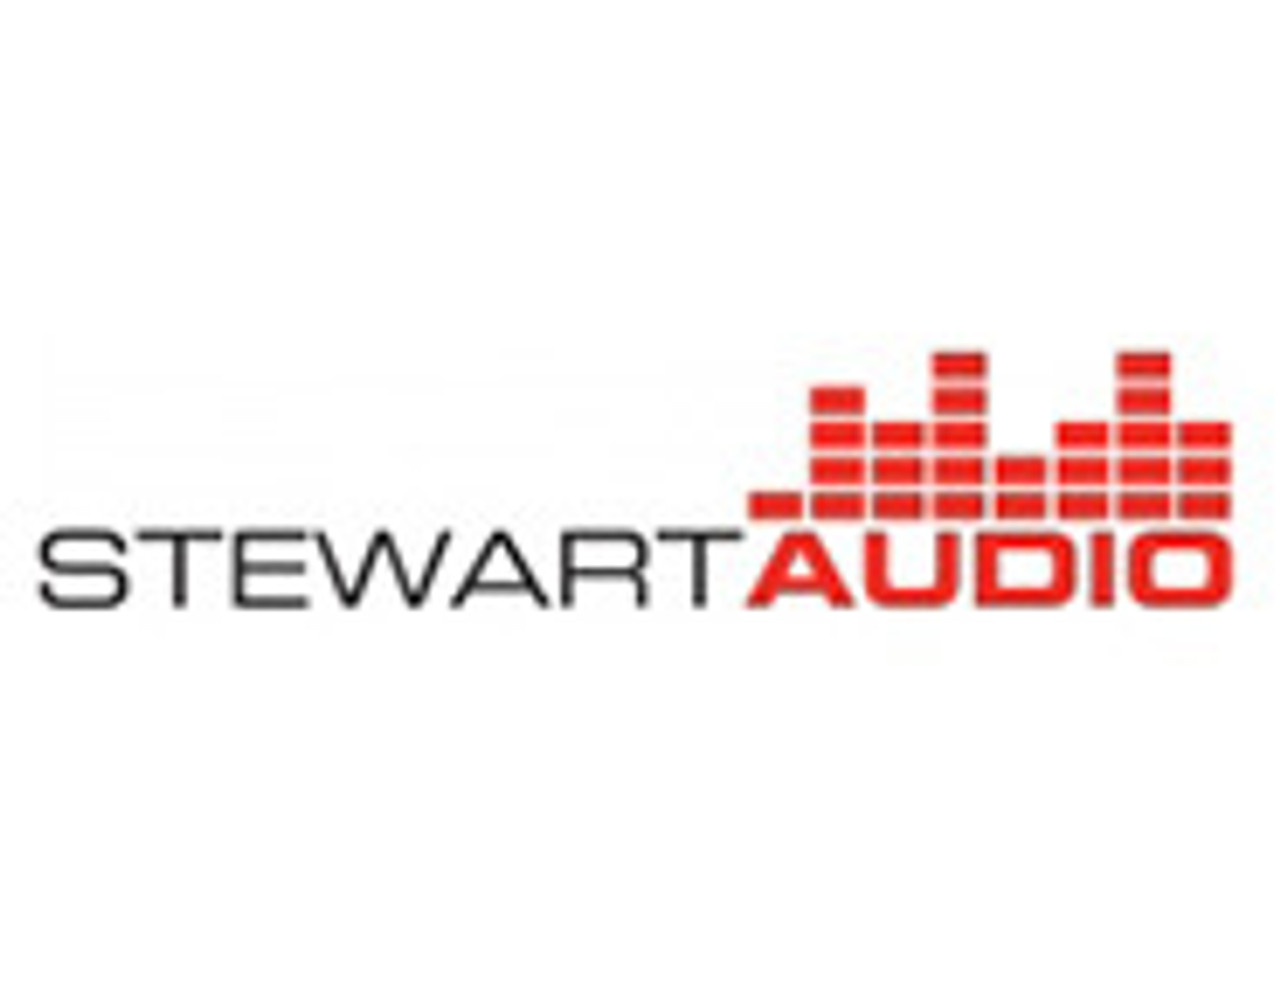 Stewart Audio